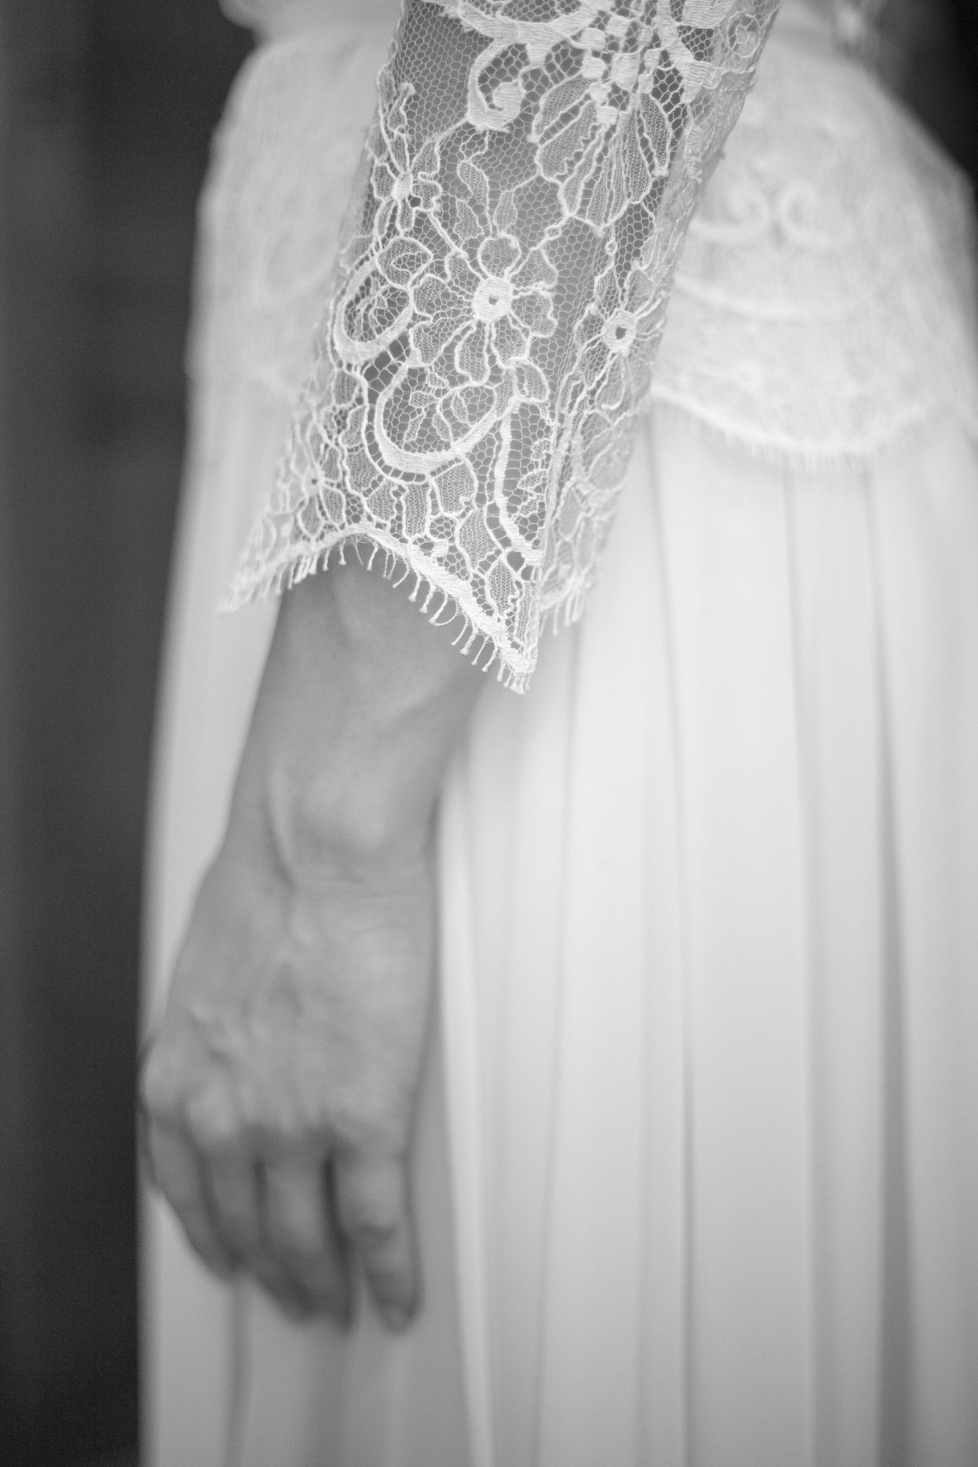 Détail d'une manche de robe de mariée en dentelle. L a photo est en noir et blanc